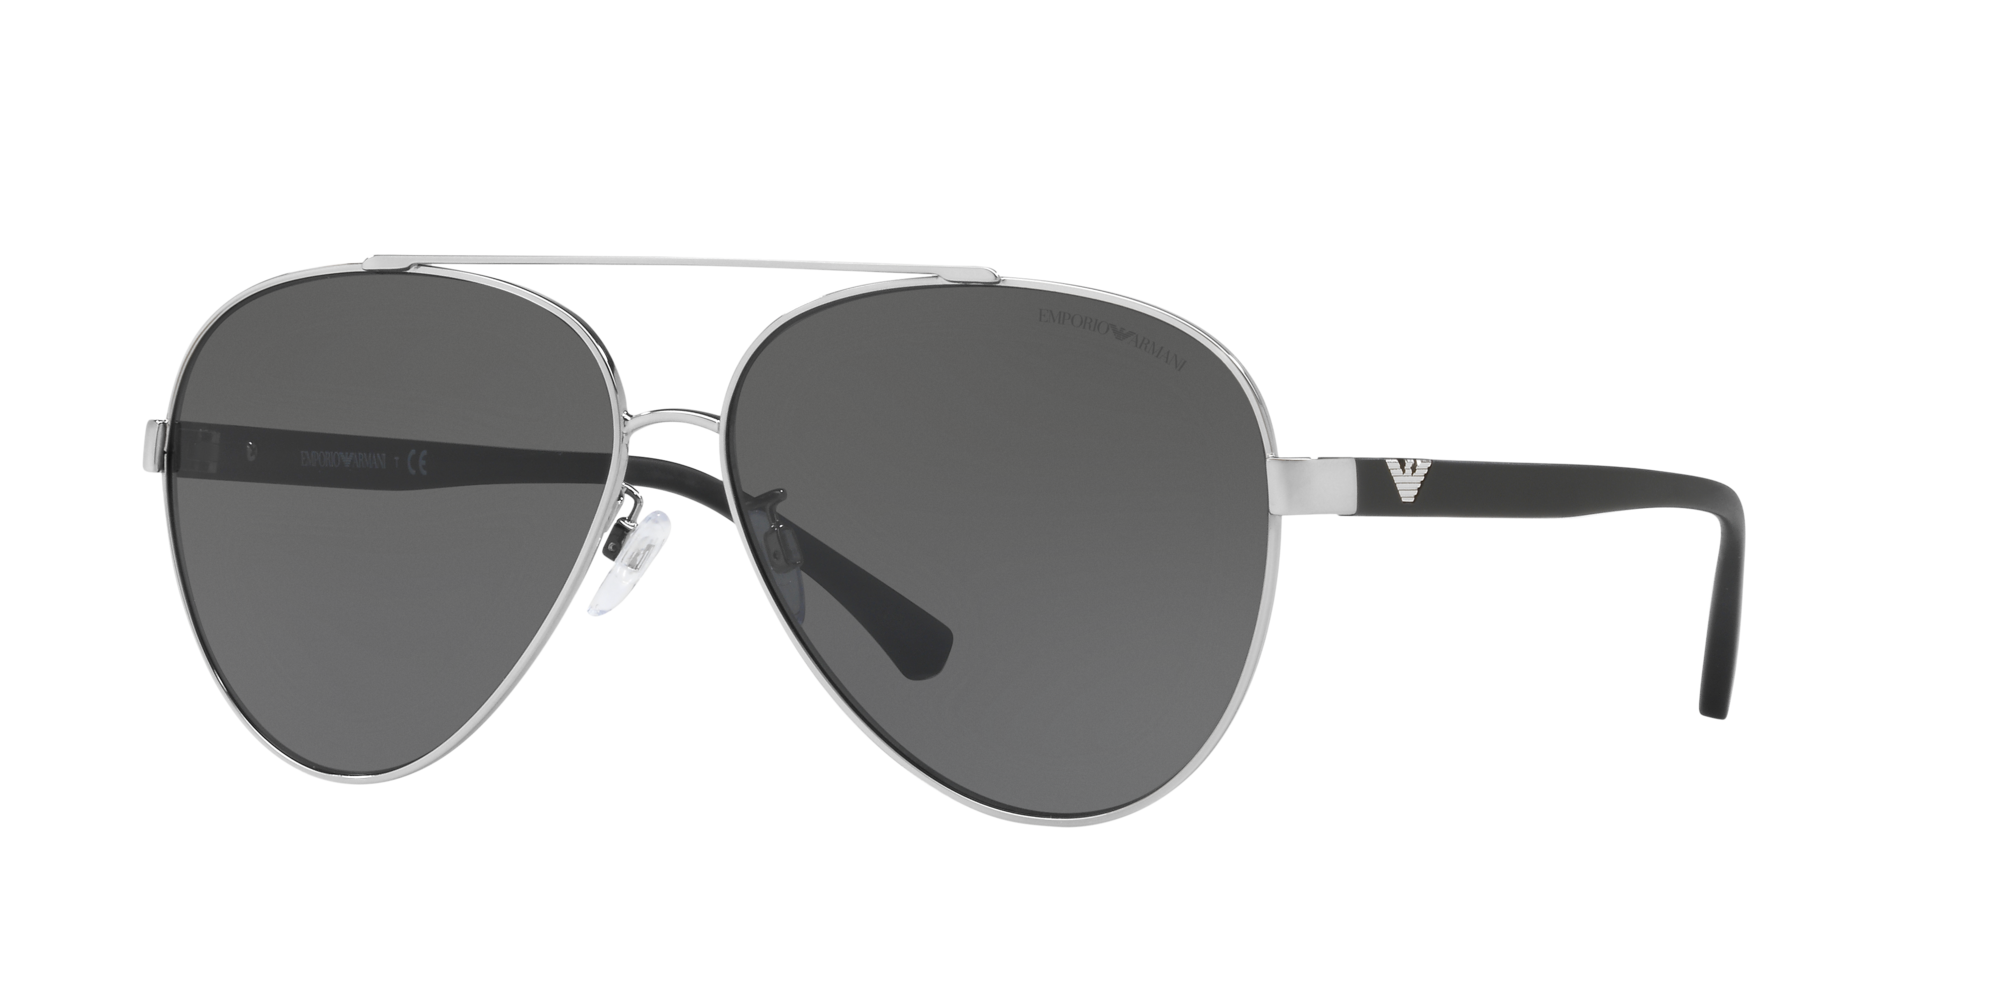 armani aviator sunglasses